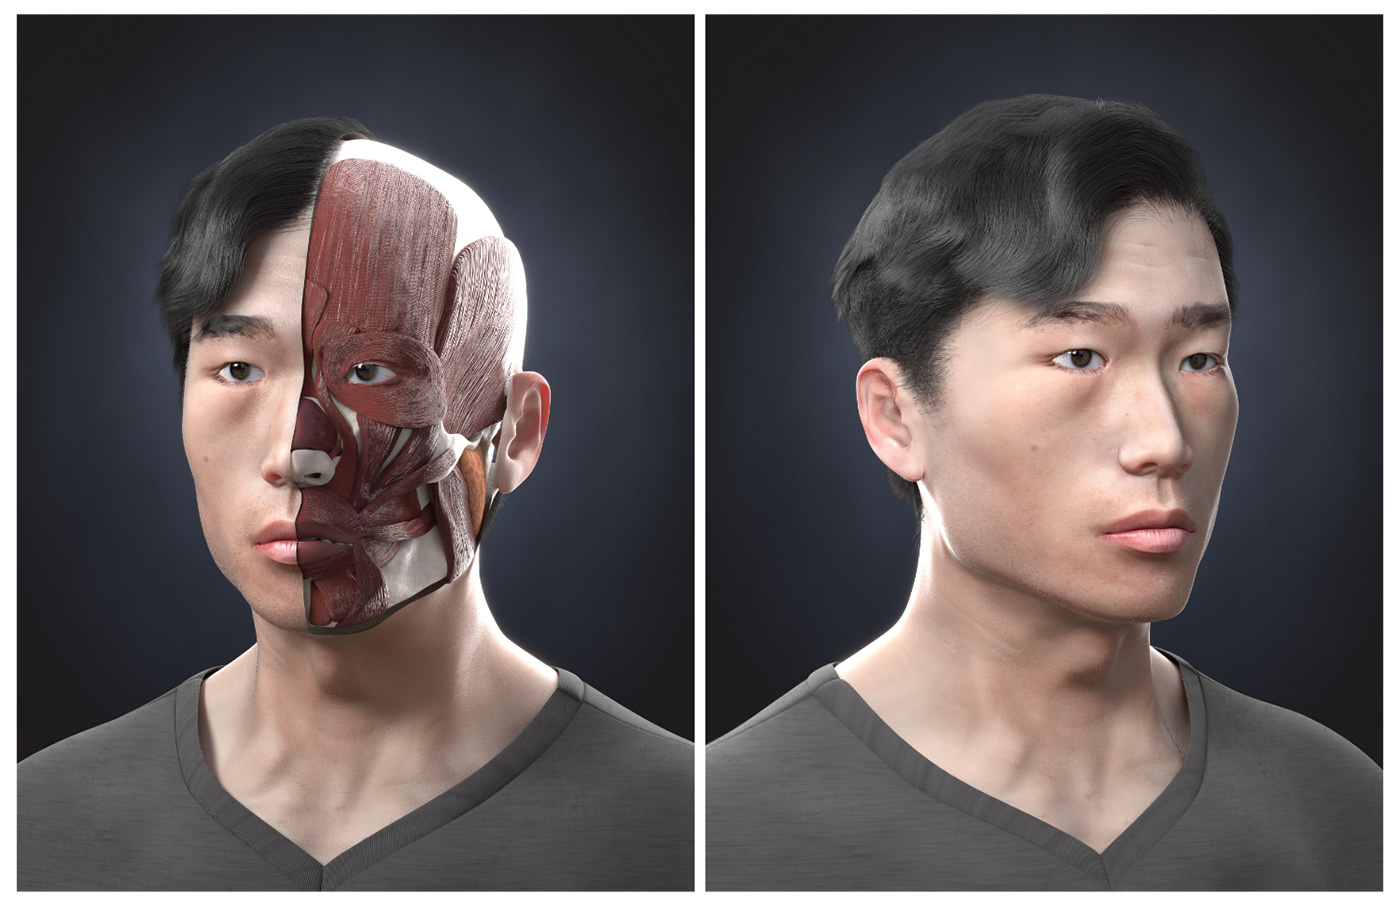 Ecorche anatomy self-portrait face bust portrait